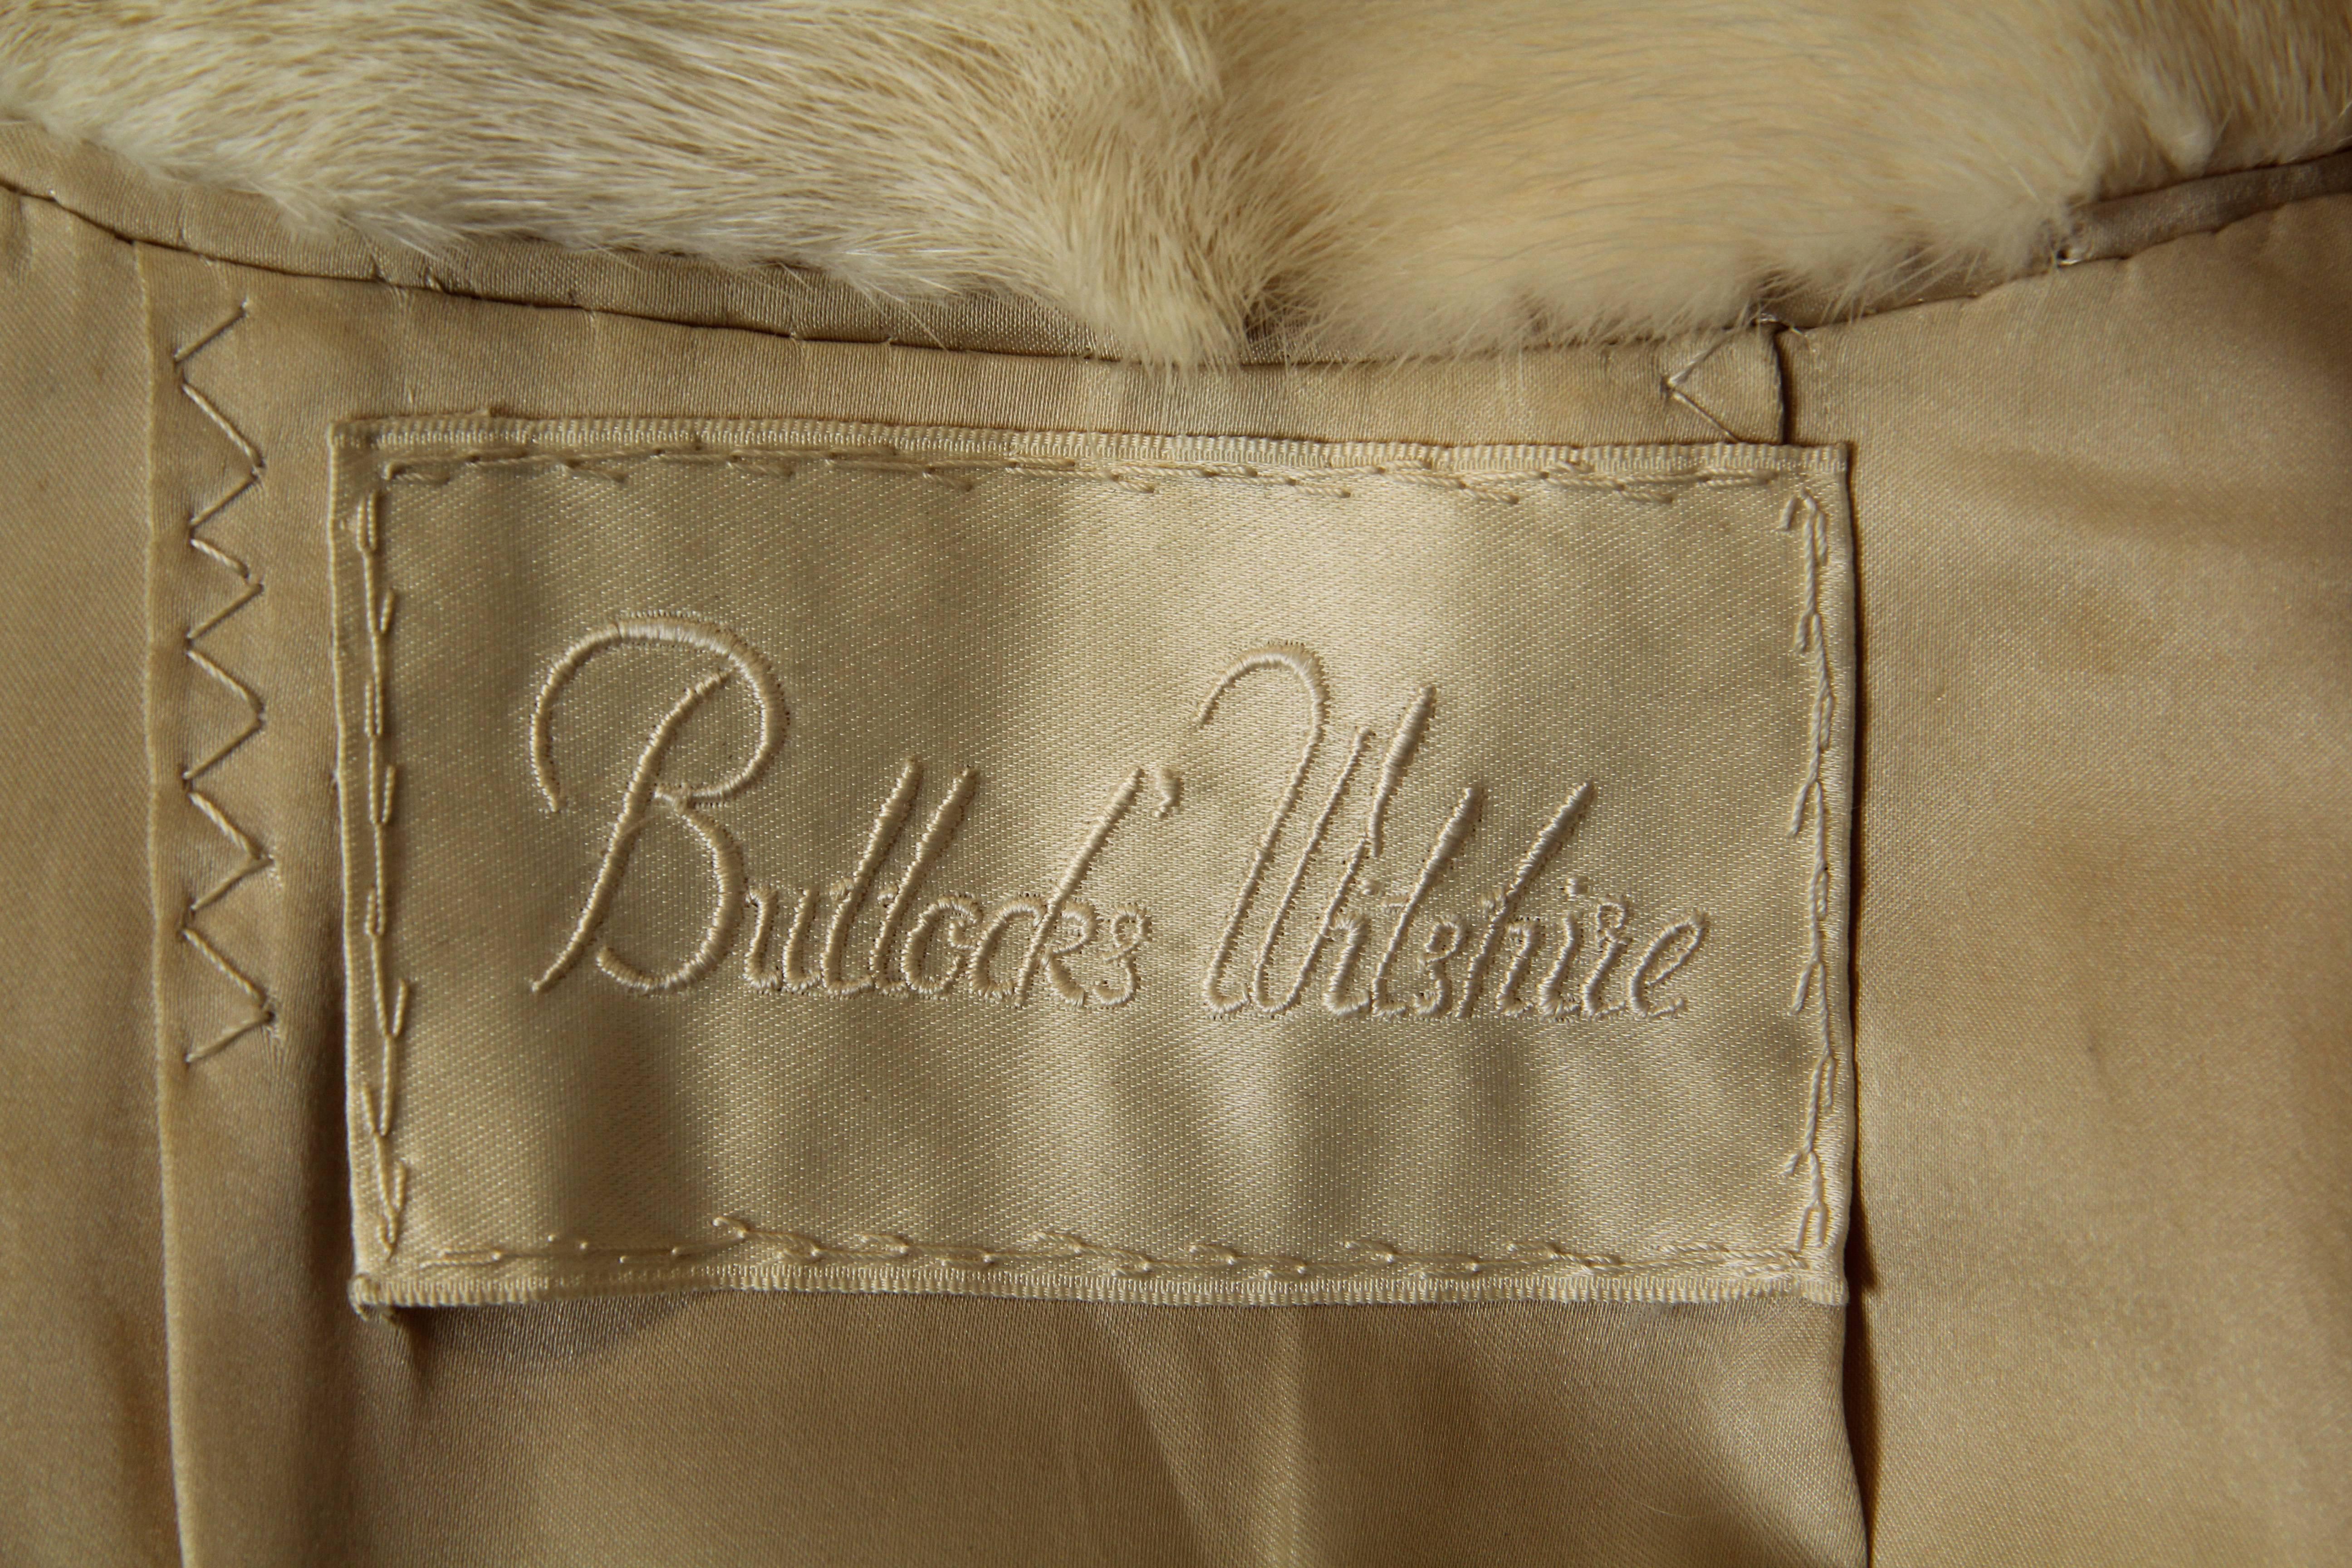 Bullocks Wilshire White Mink Coat 3